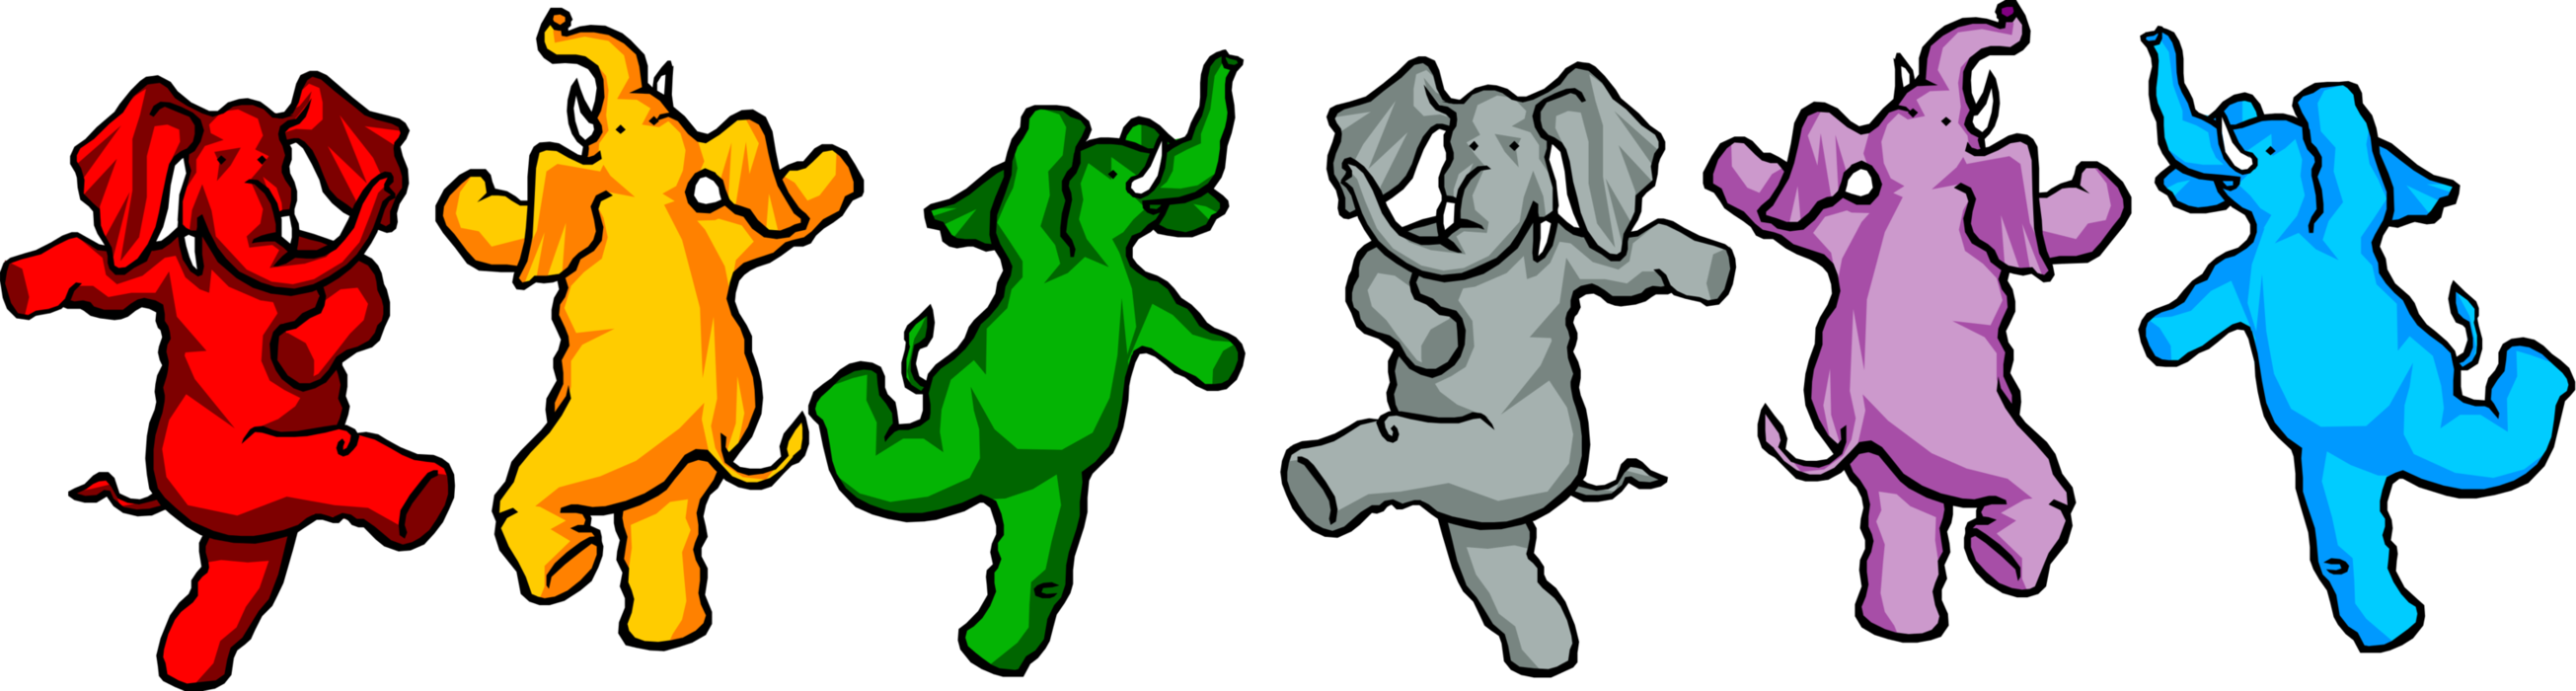 Танец слоники. Танцующий слон. Танцующие зверюшки. Слоник танцует. Танцующие животные иллюстрации.